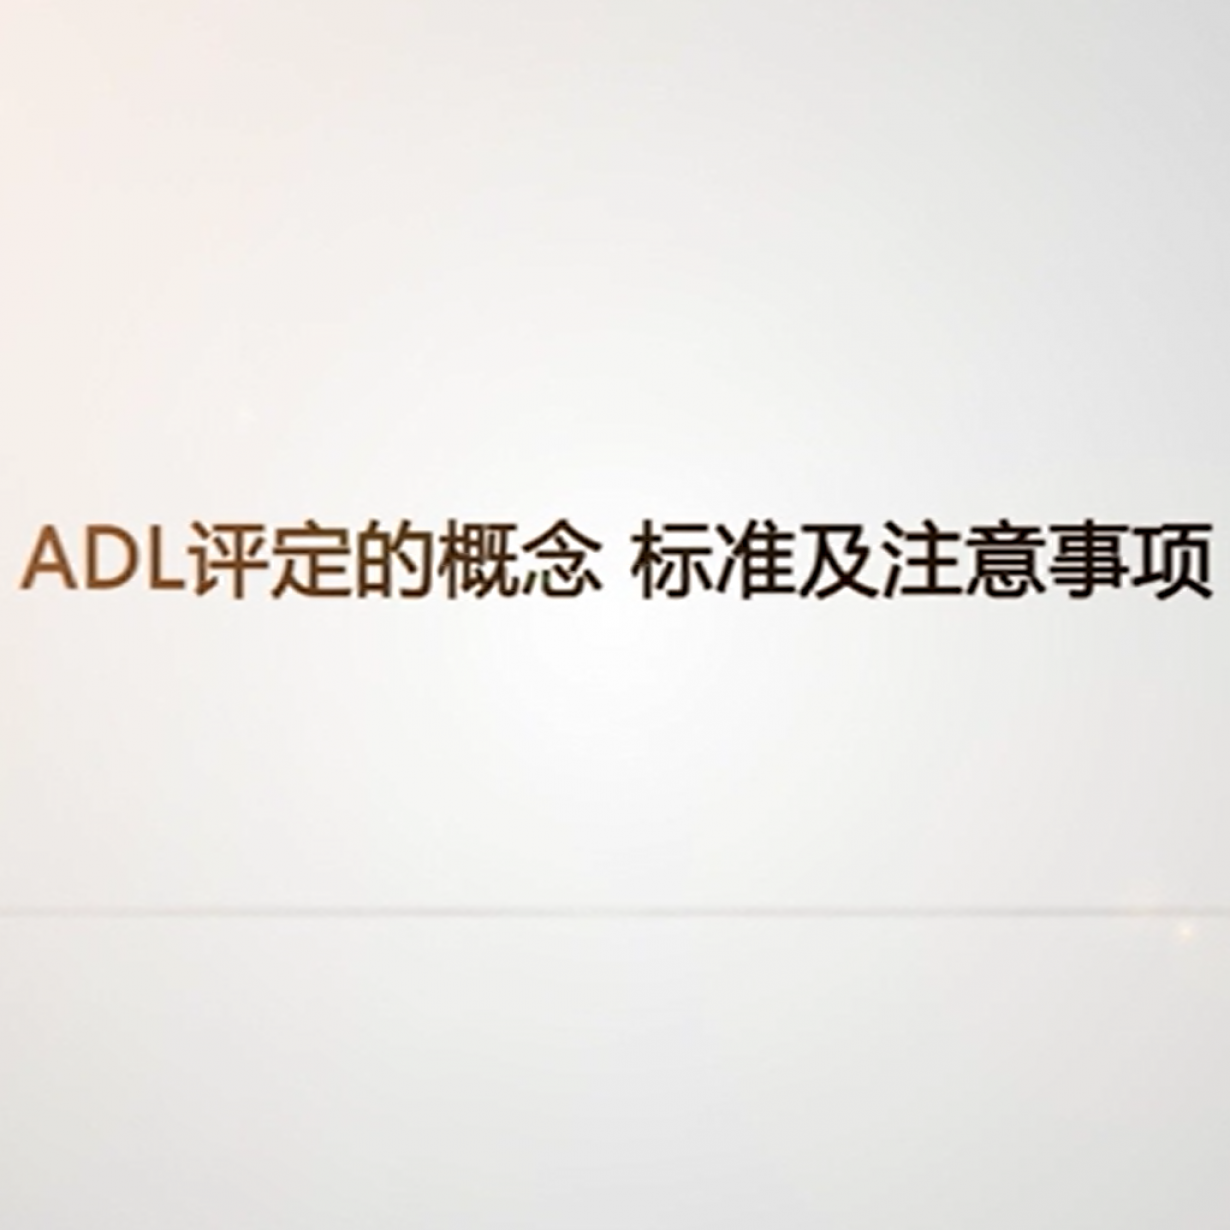 ADL评定概念 标准及注意事项.mp4